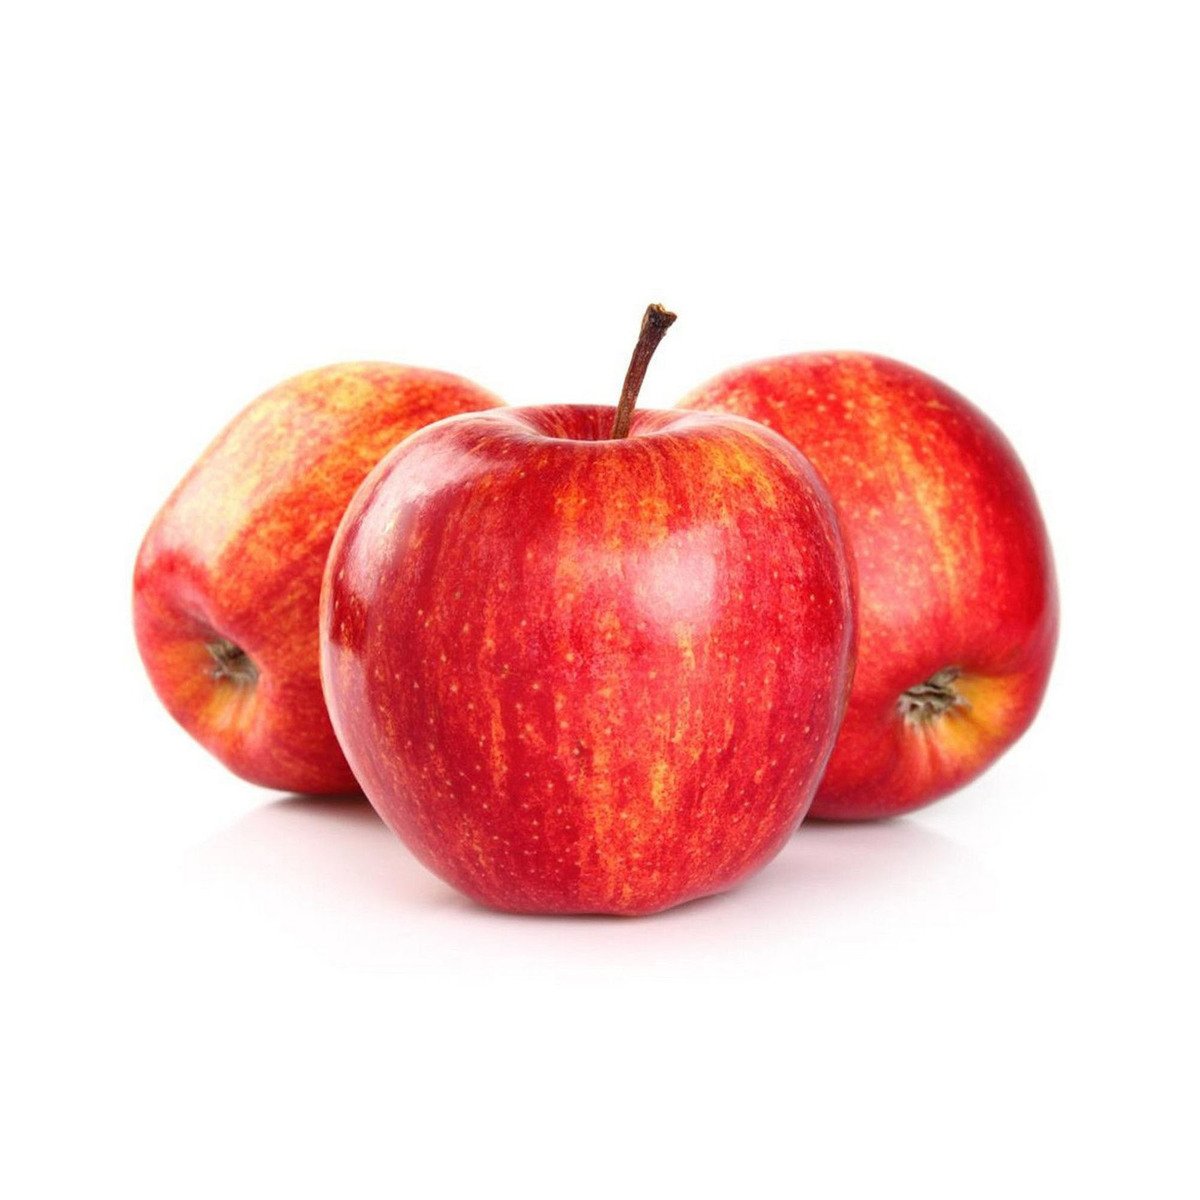 Buy Apple Royal Gala Slovakia 1 kg Online at Best Price | Apples | Lulu UAE in UAE